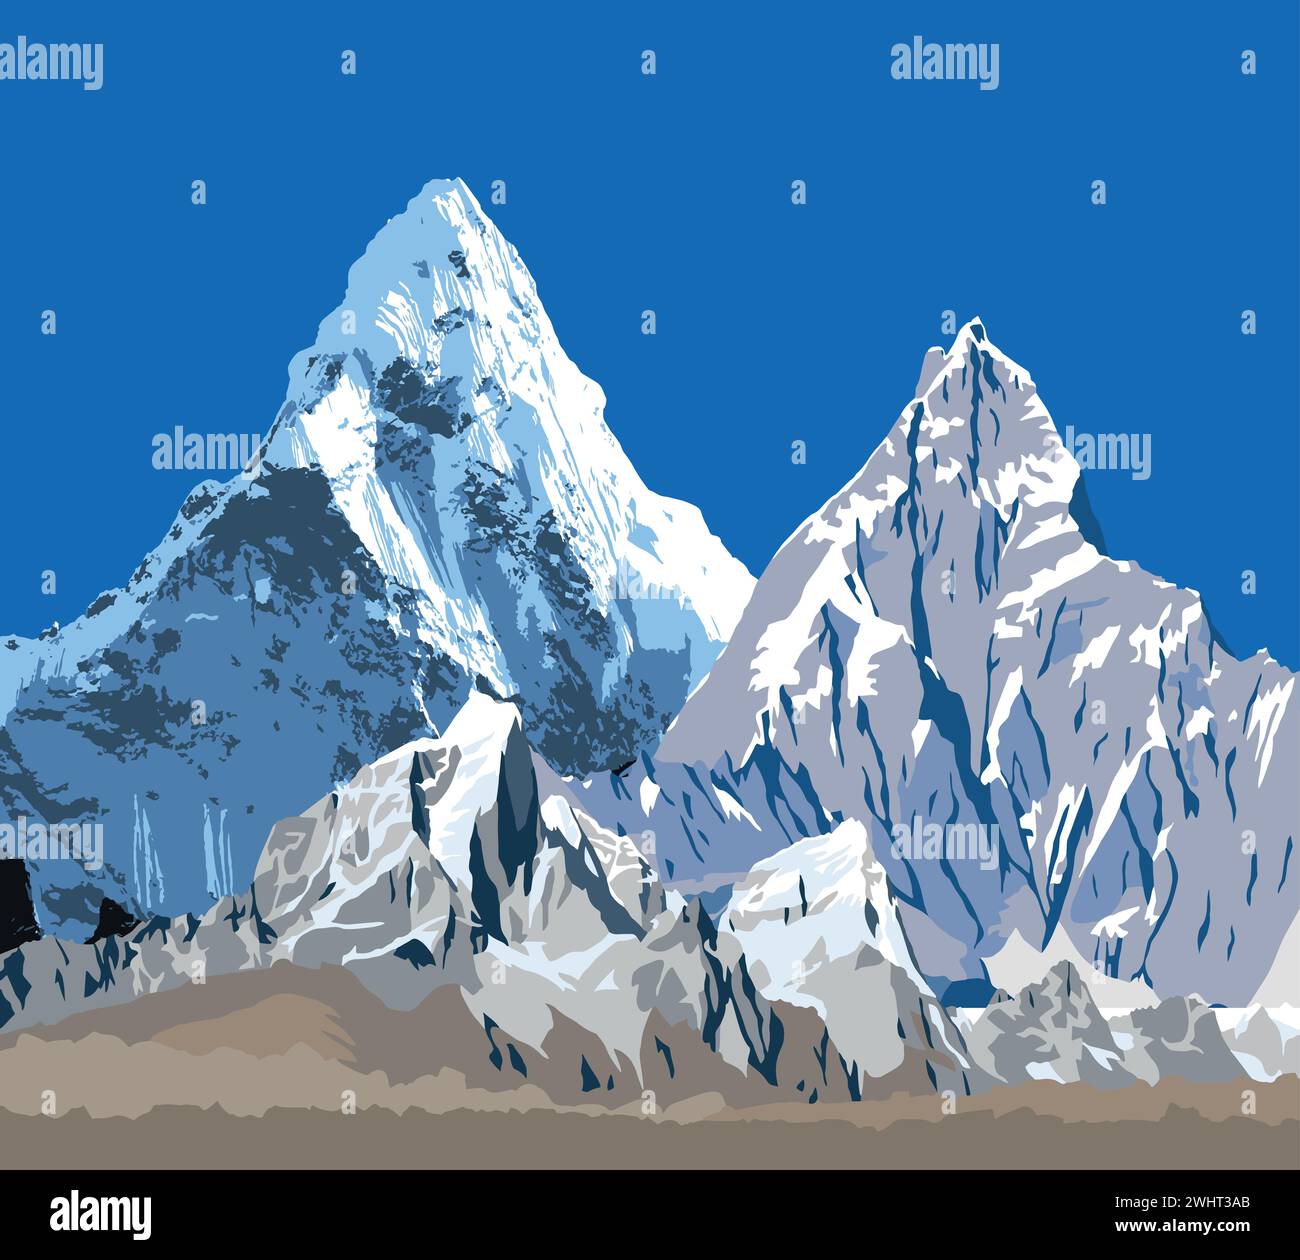 Grande chaîne de montagnes de l'Himalaya, illustration vectorielle des montagnes de l'Himalaya, montagne enneigée de couleur blanche et bleue Illustration de Vecteur